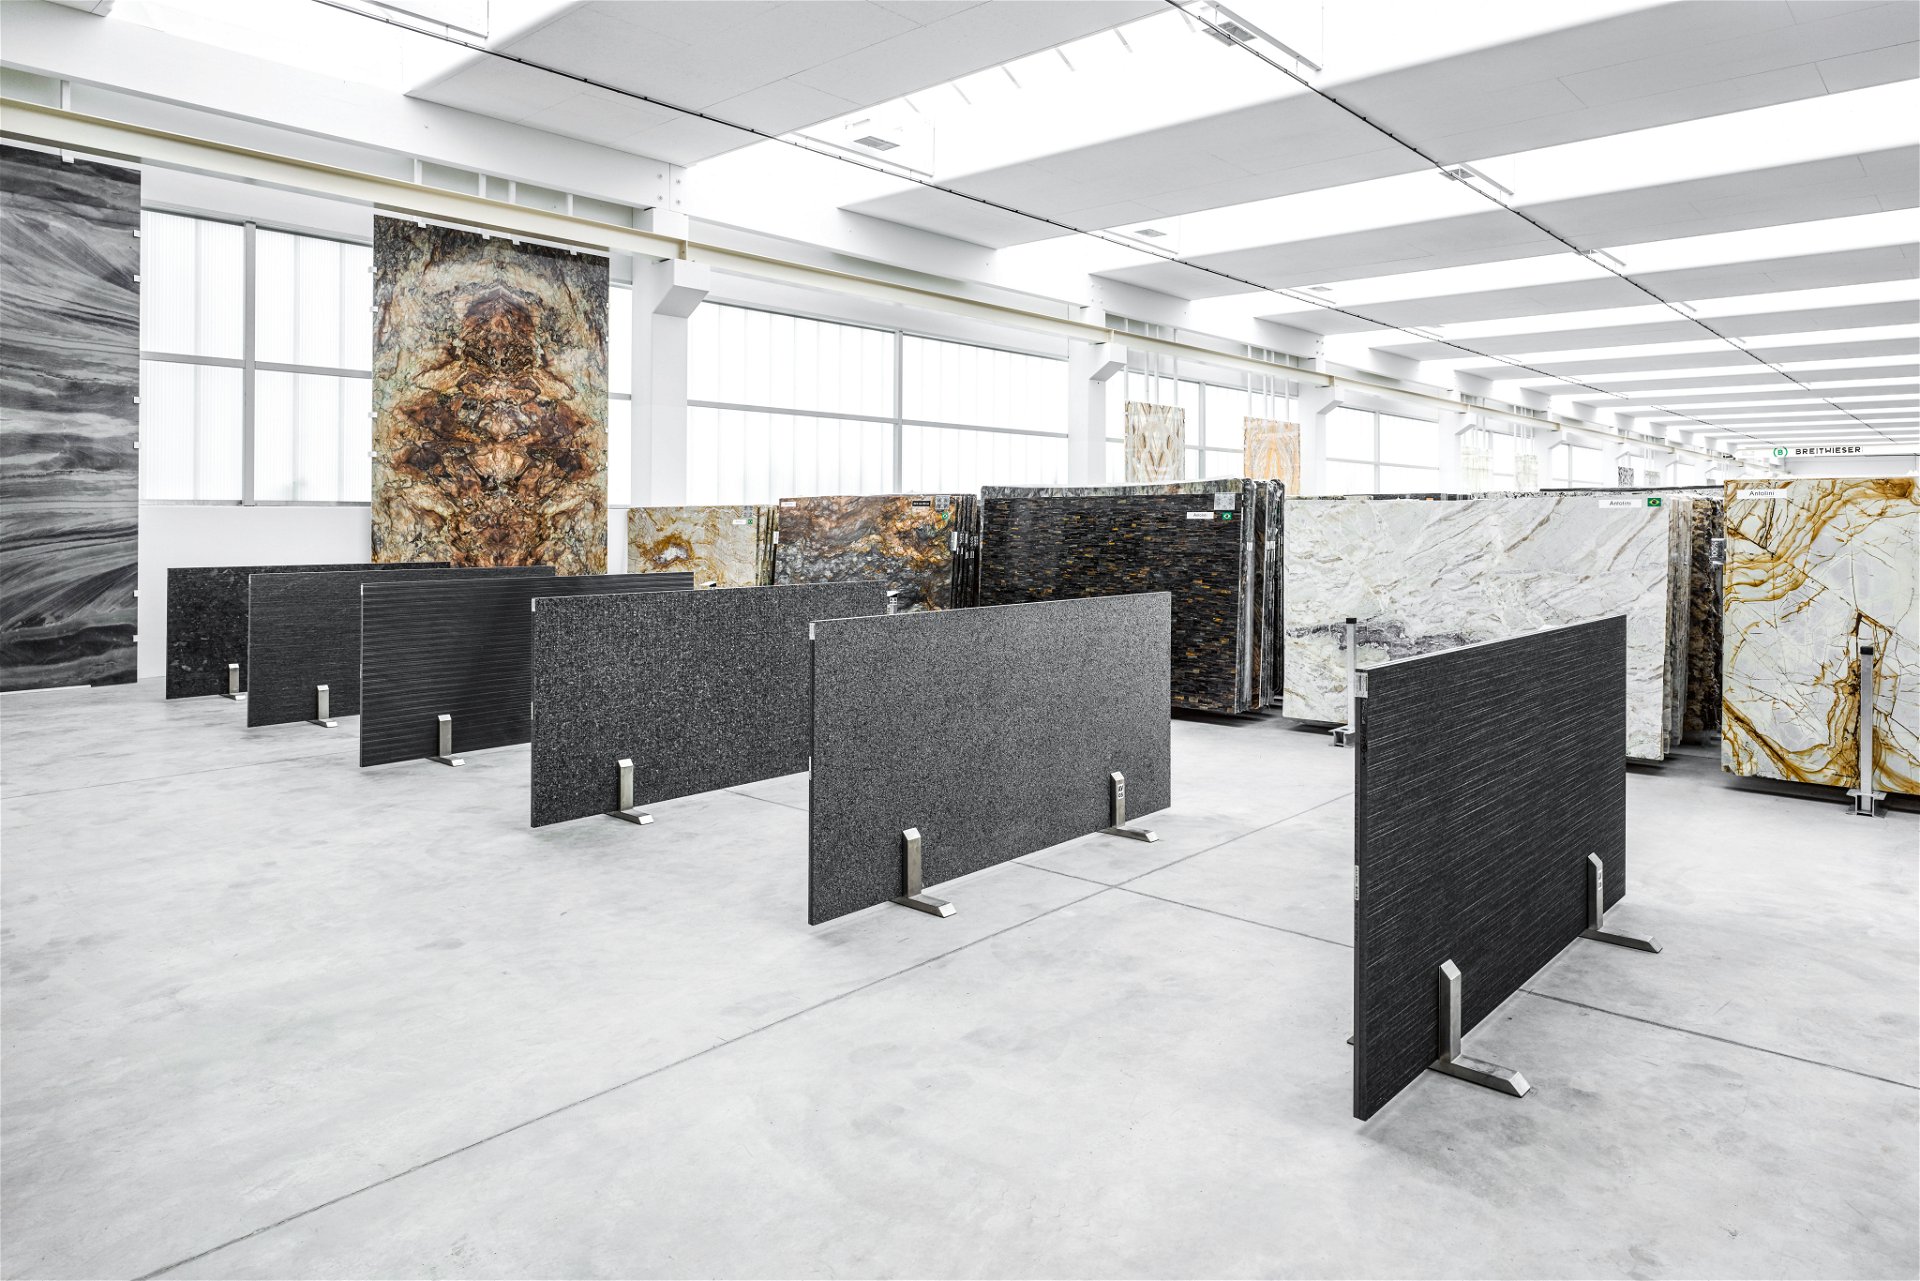 Platten-Bau: Die Stone Gallery von Breitwieser lädt zum Träumen ein. Hier sind mehr als 600 verschiedene Materialien ausgestellt, Platten können individuell gewählt werden. breitwieser.online